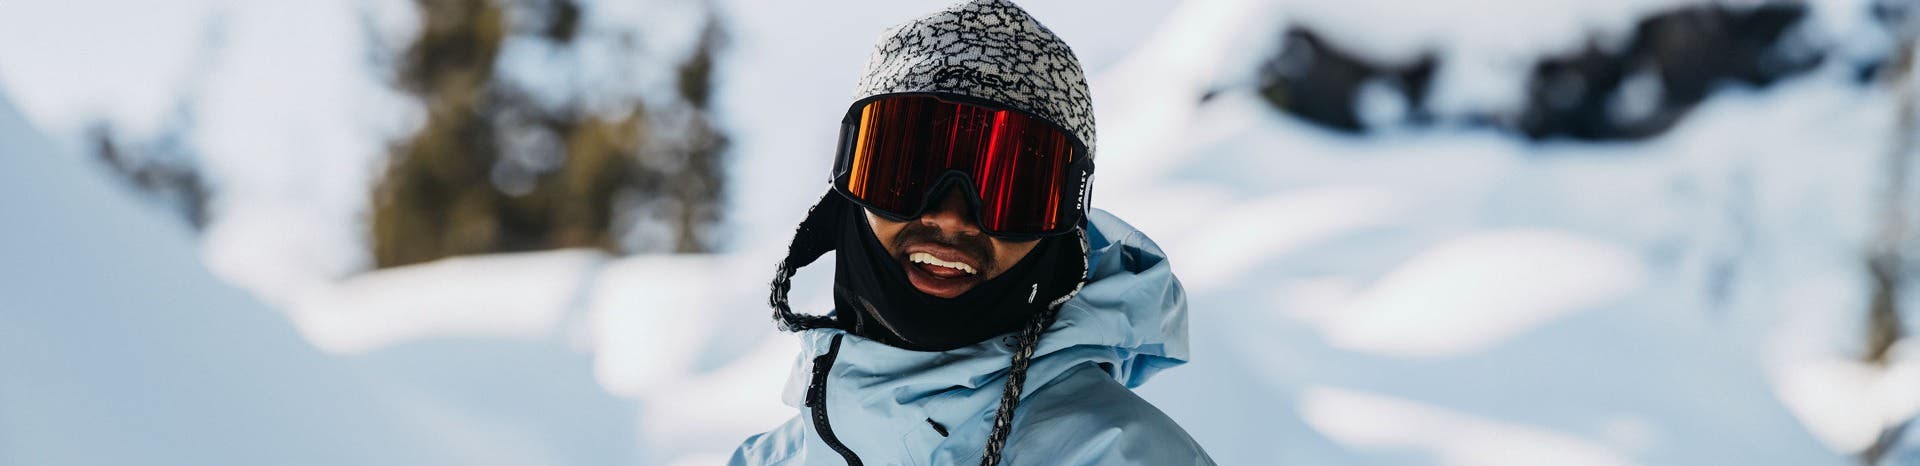 A man in Oakley prescription ski goggles smiles in his snow gear.